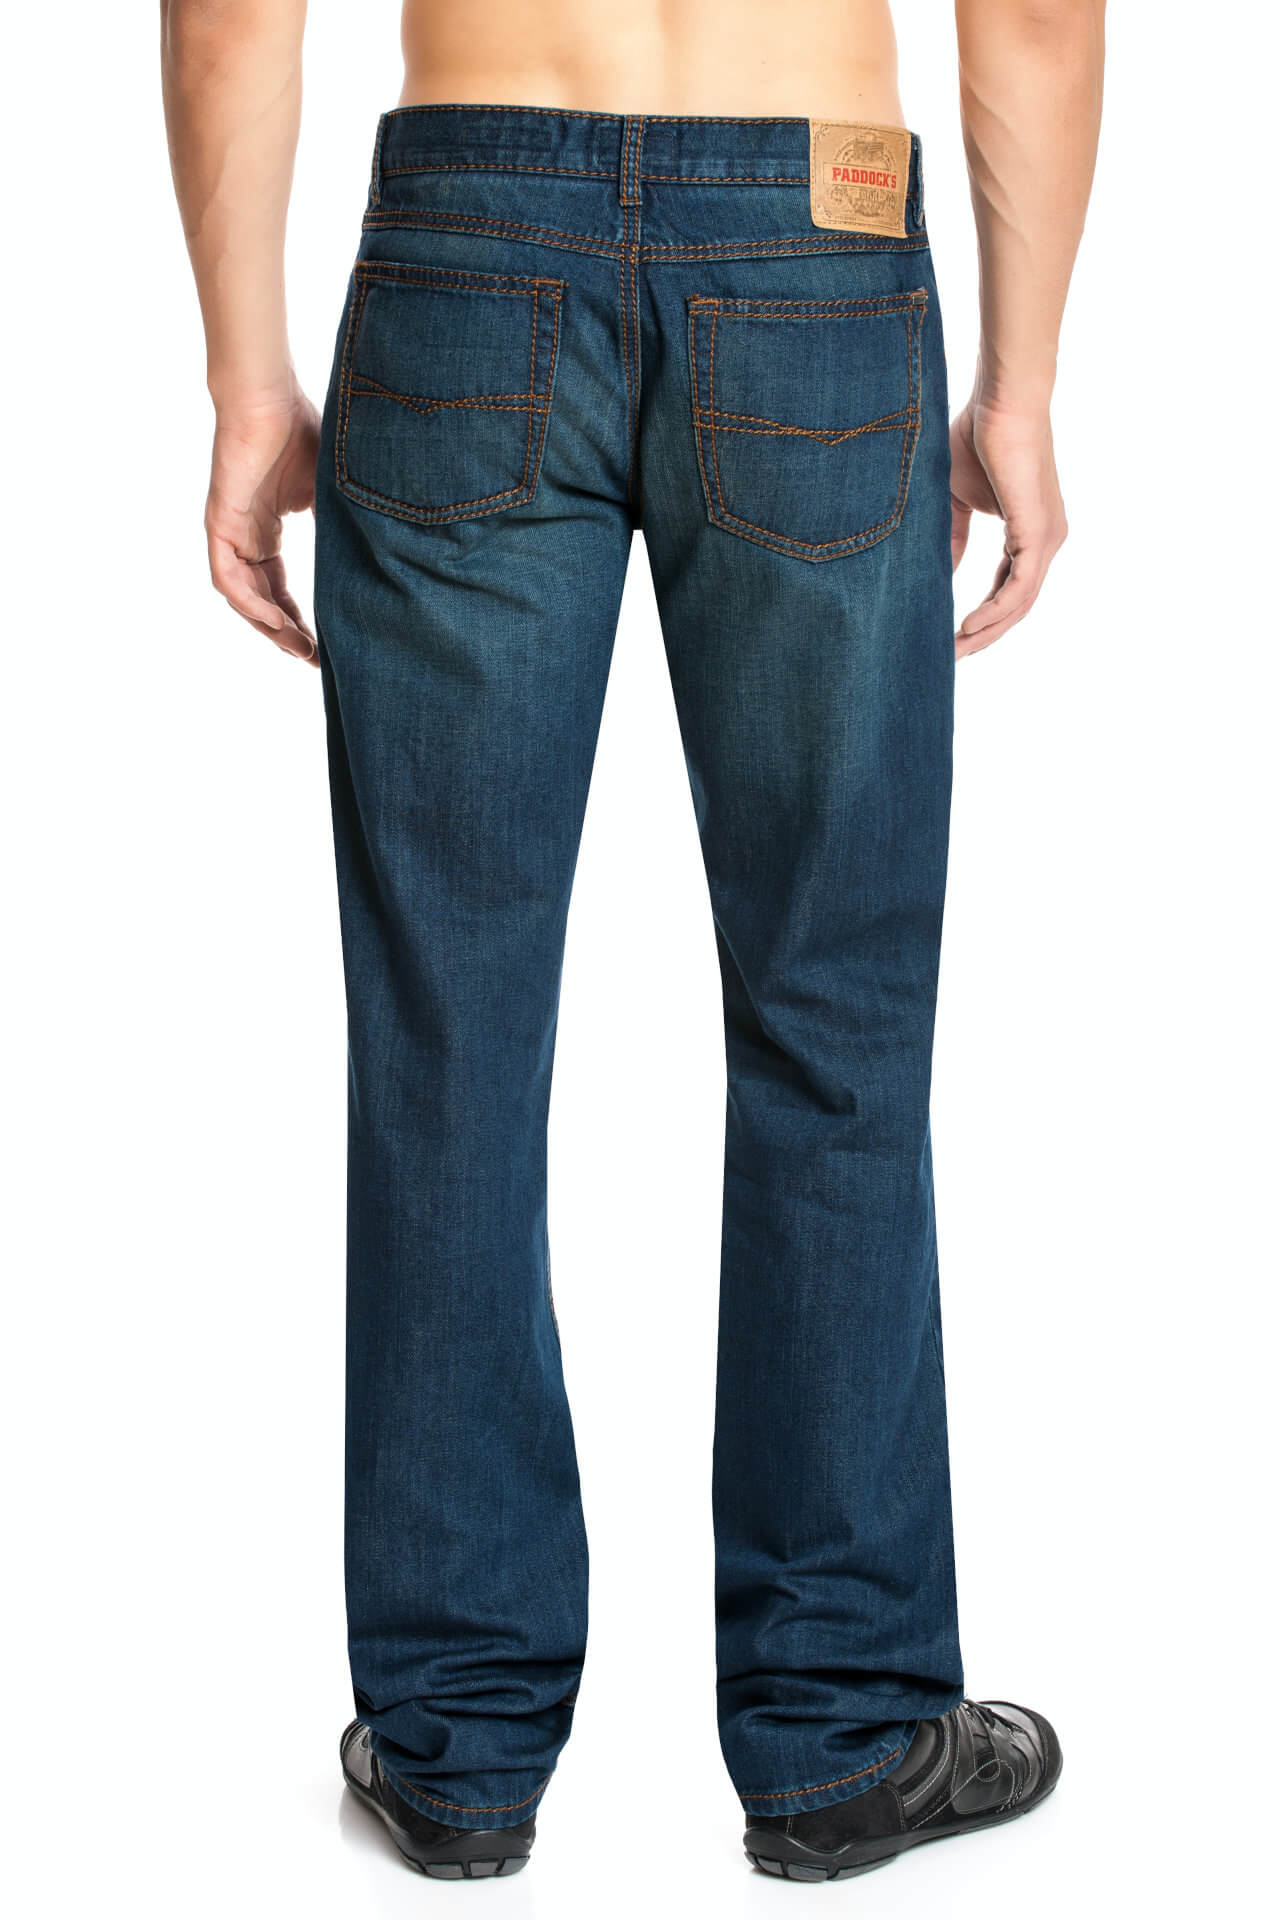 Paddock's Carter Jeans in Überlänge